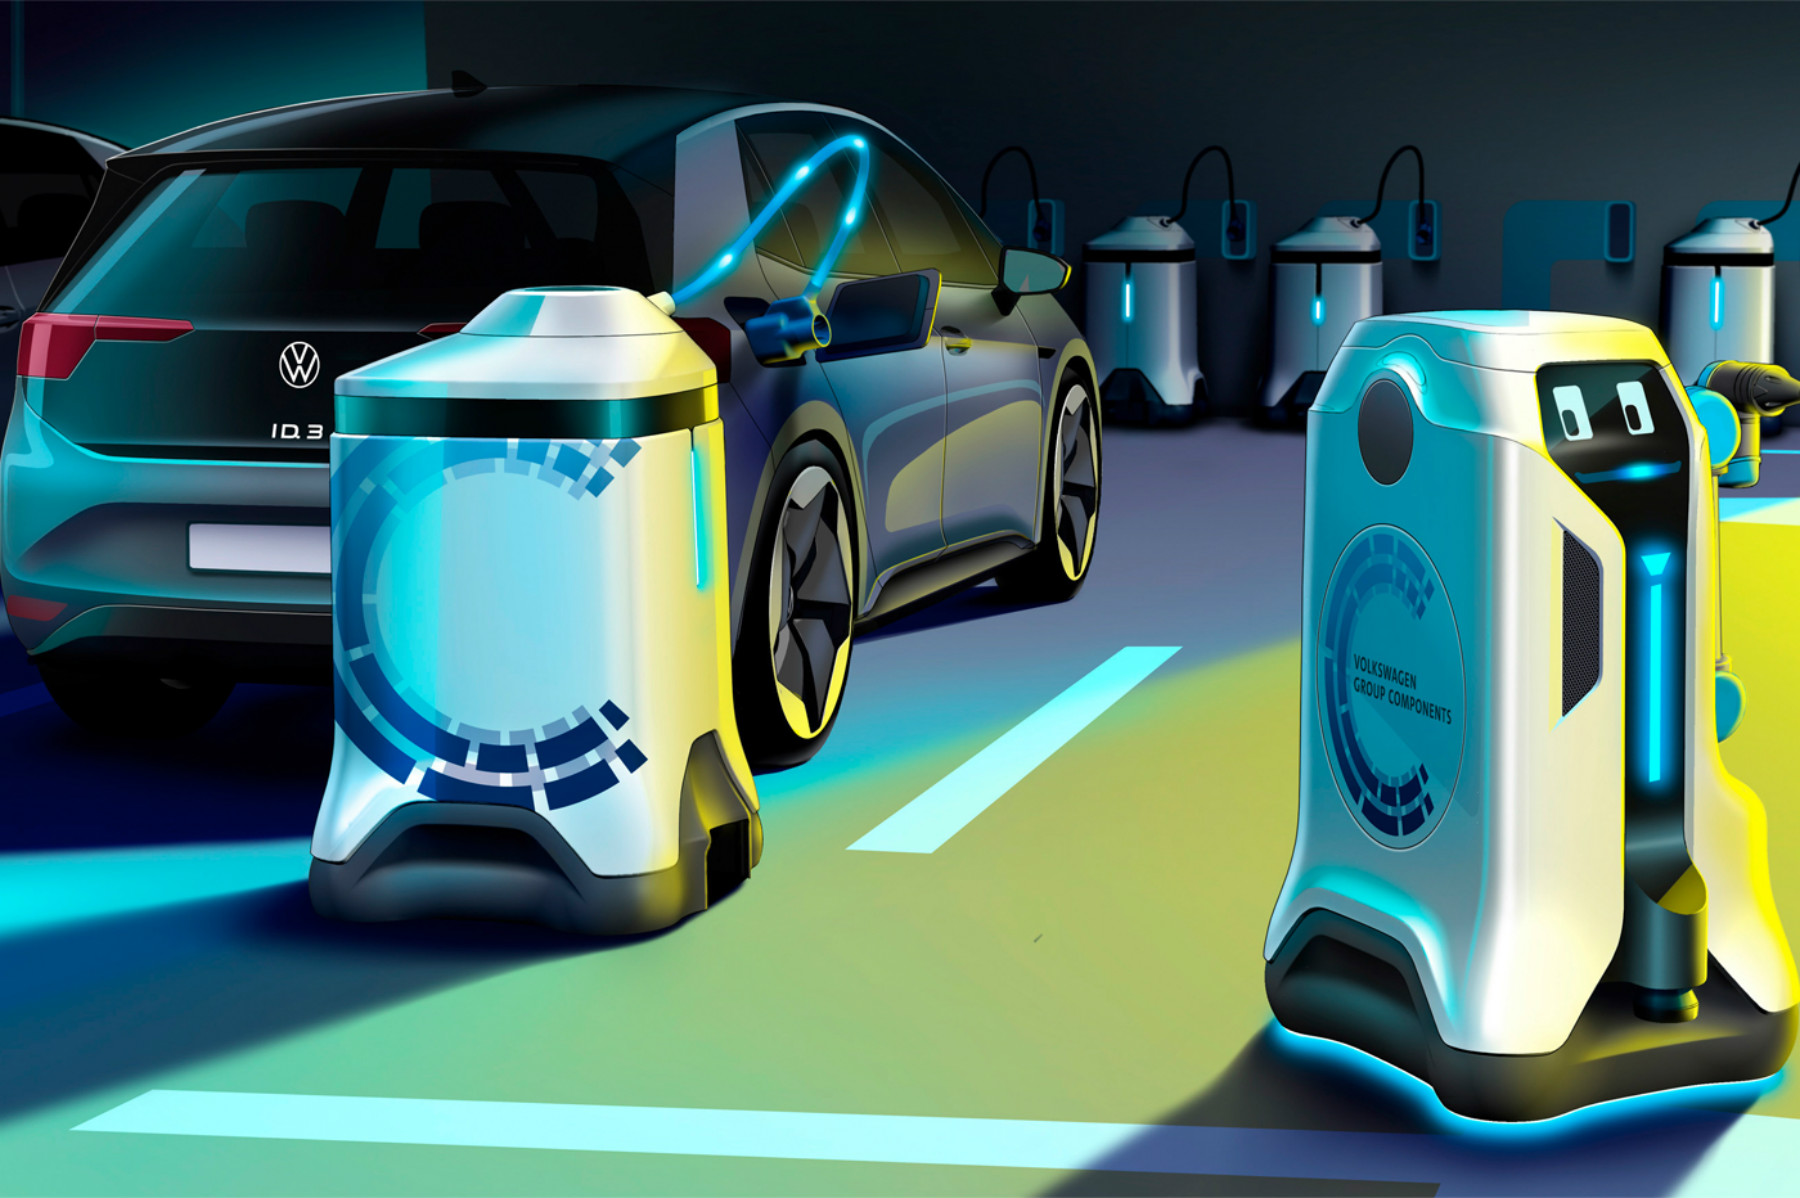 Selon le constructeur automobile Volkswagen, des robots autonomes pourront transformer n'importe quel parking en station de recharge pour véhicule électrique. © Volkswagen